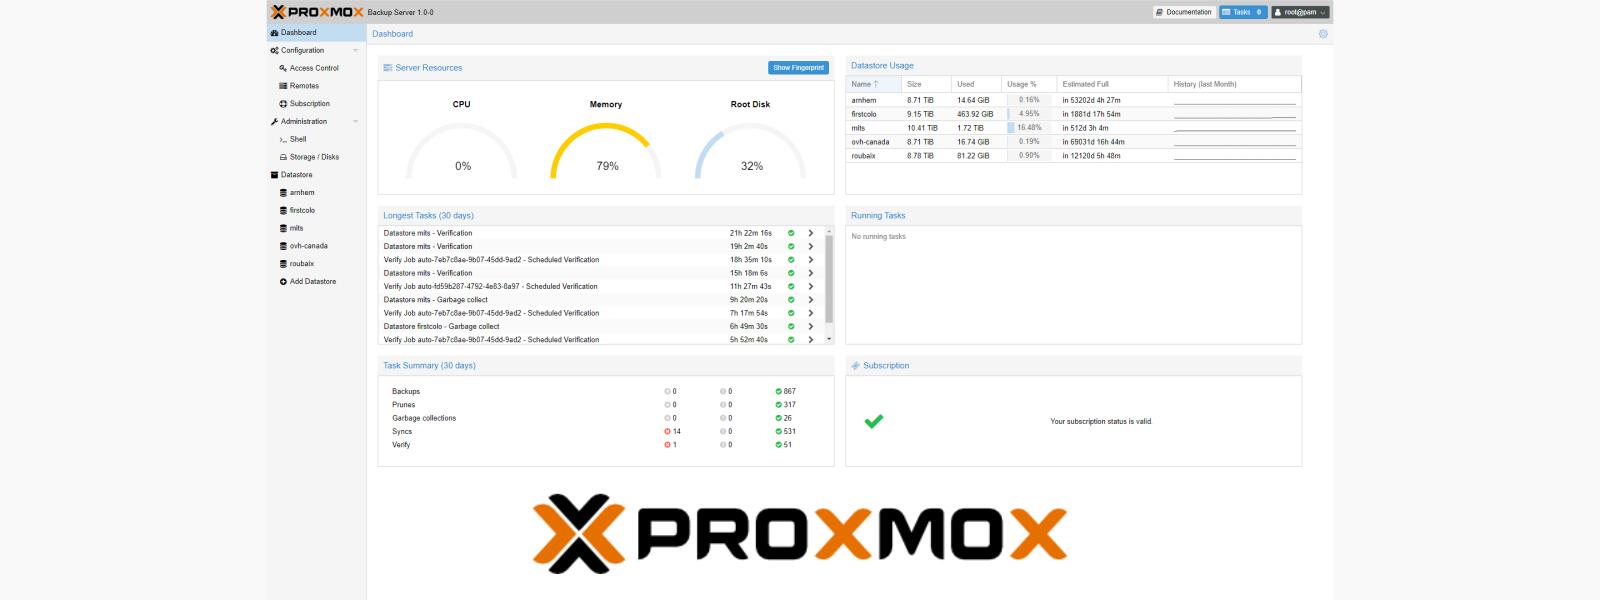 Proxmox VE 6.4, conta con Kernel 5.4 e modo en vivo de restauración